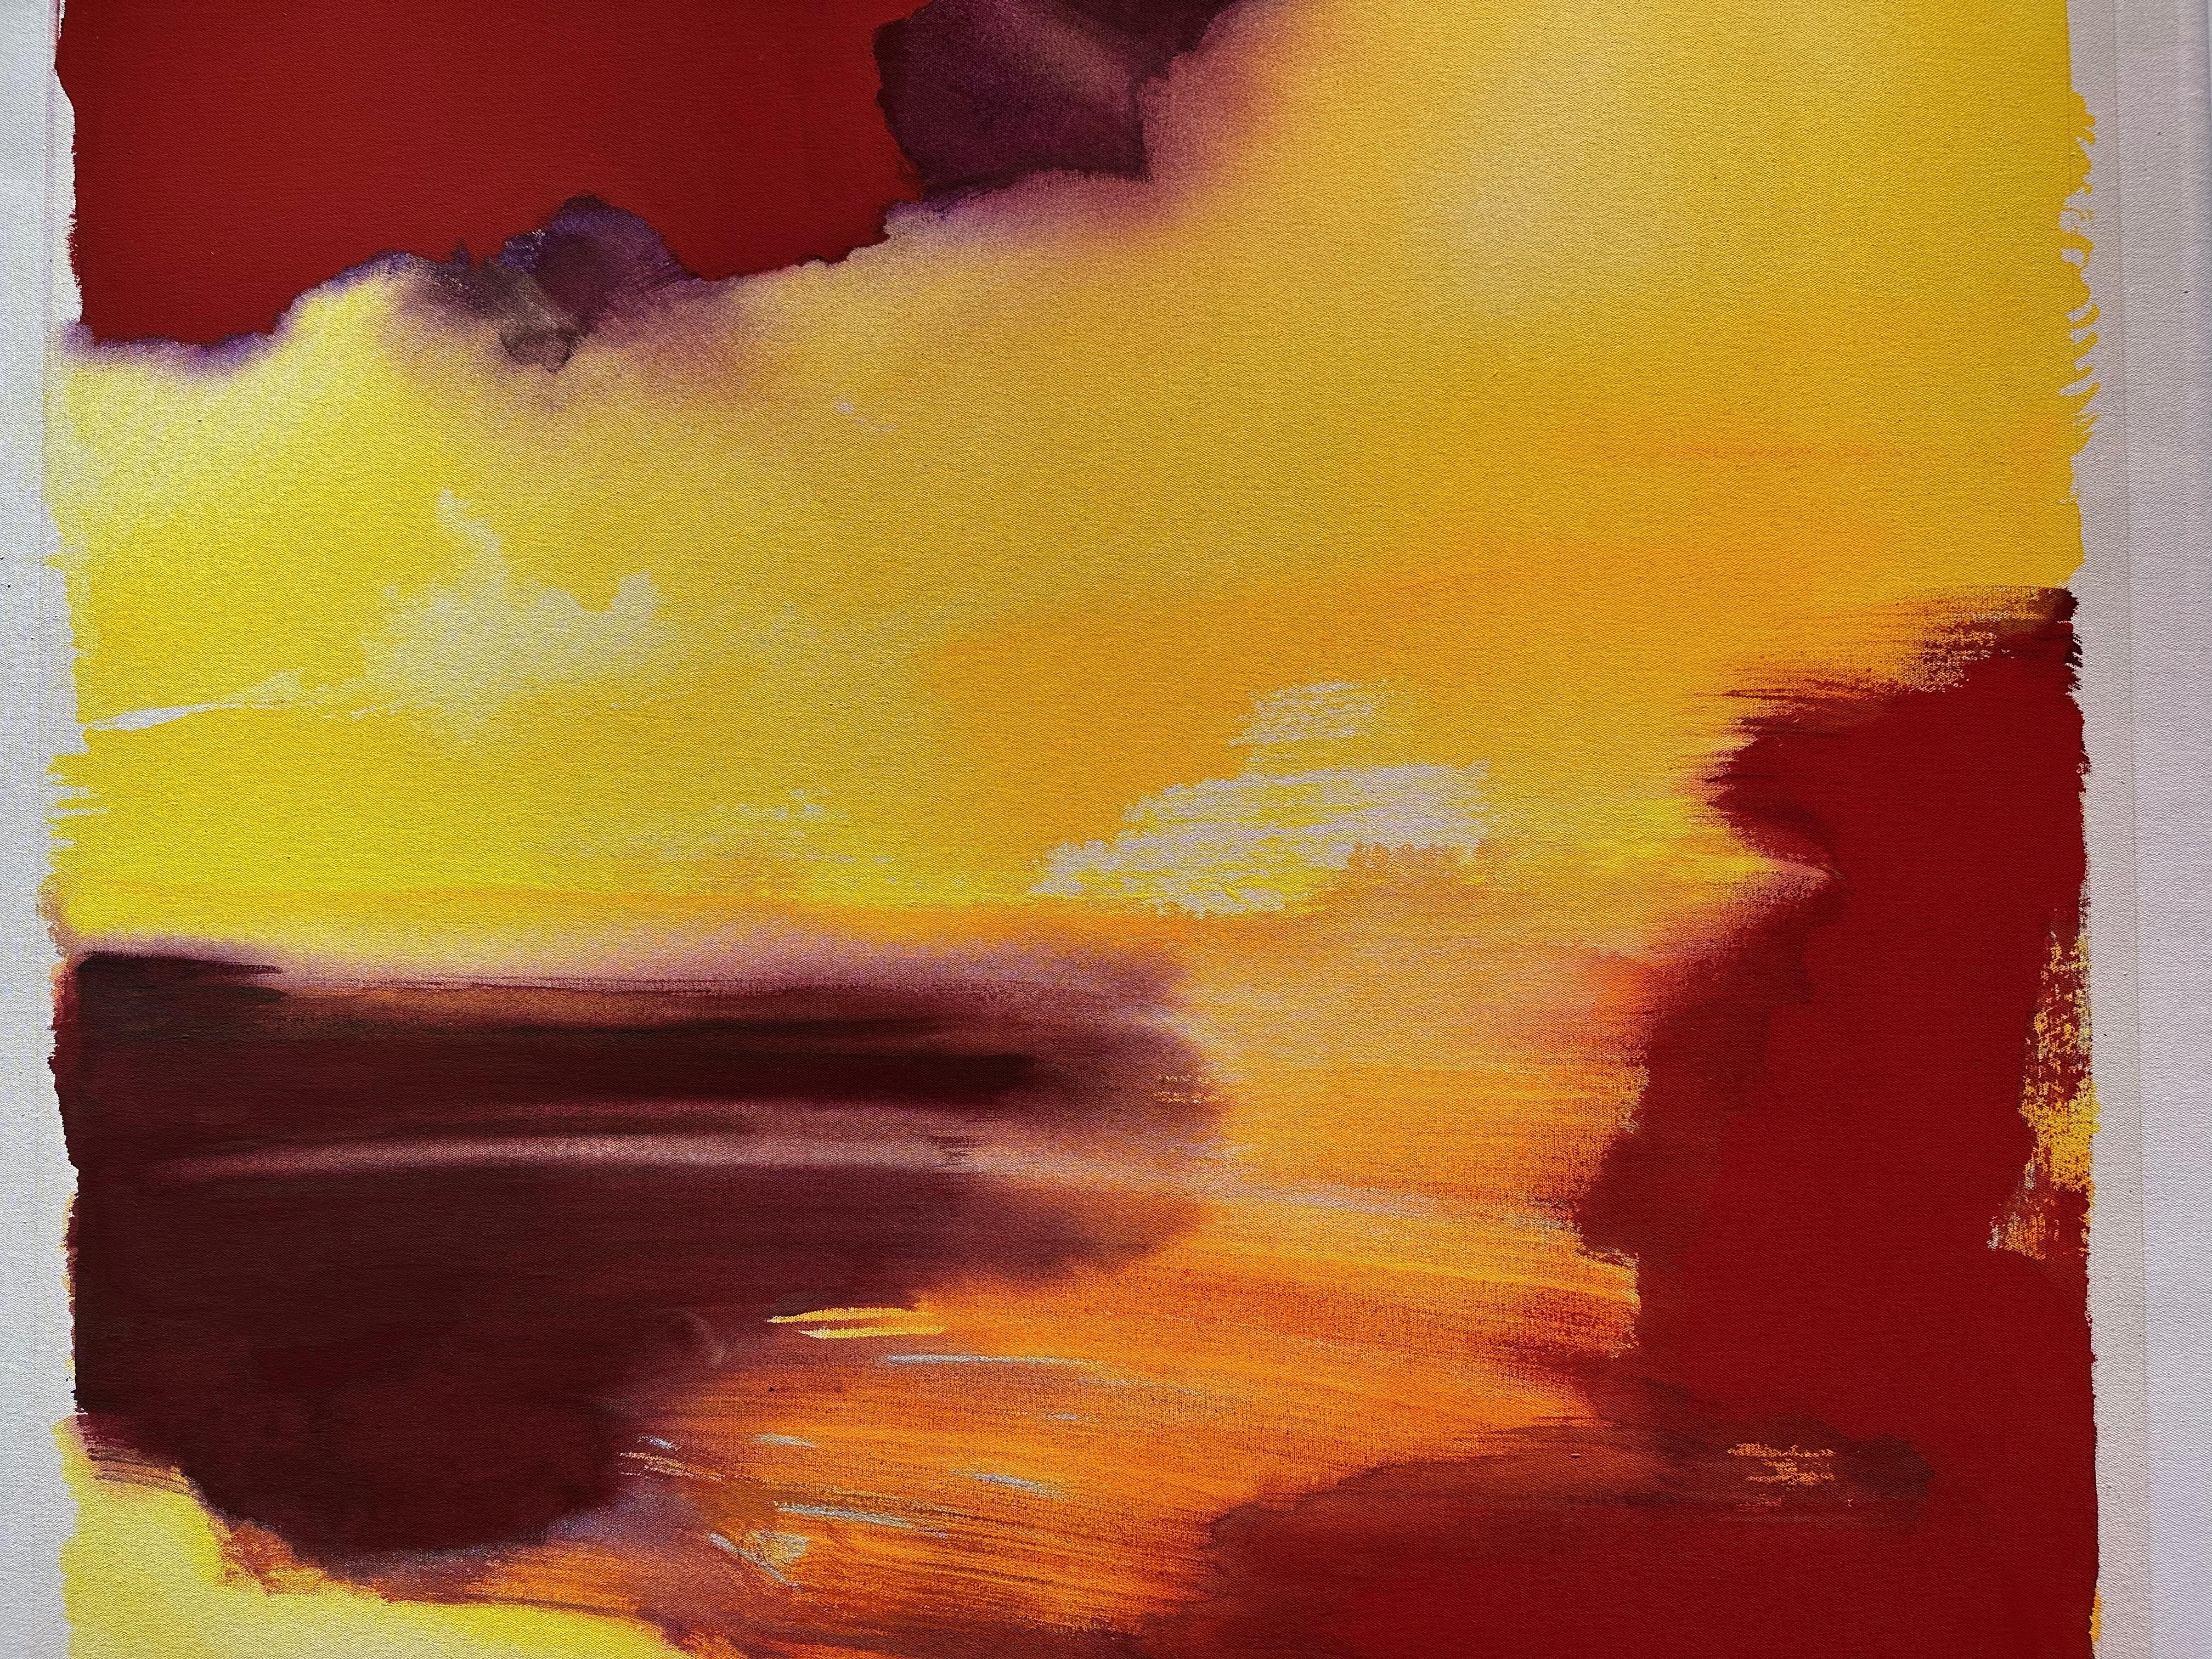 Vue sur le coucher de soleil Grande peinture abstraite jaune rouge - Jaune Abstract Painting par Frank Monaco